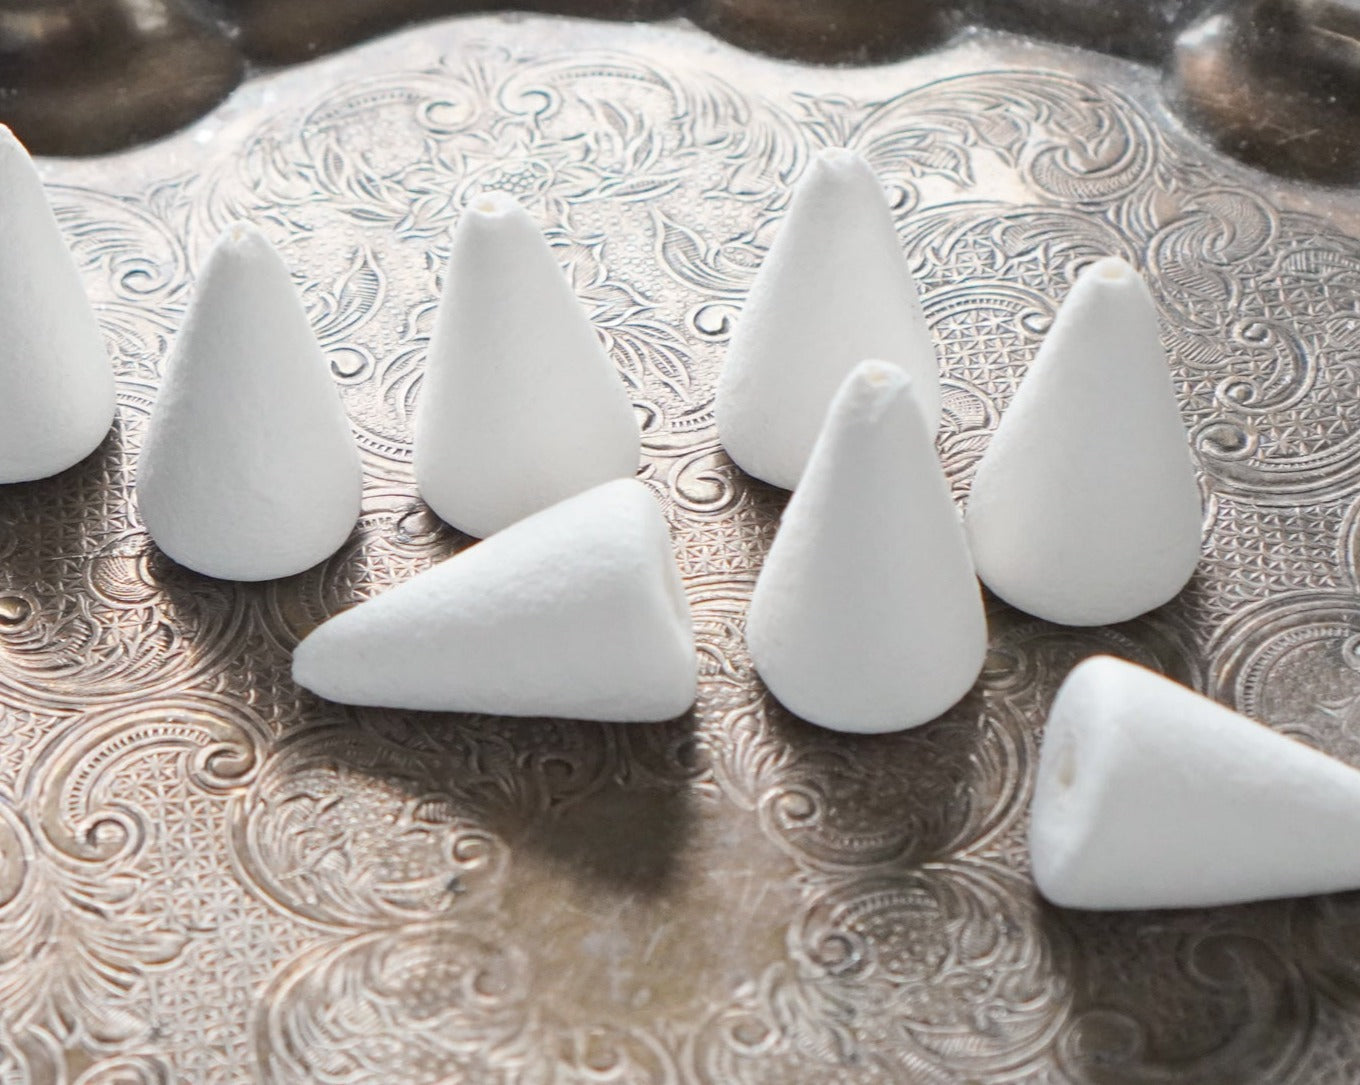 Spun Cotton Cones - 32mm Cone Craft Shapes, 12 Pcs.